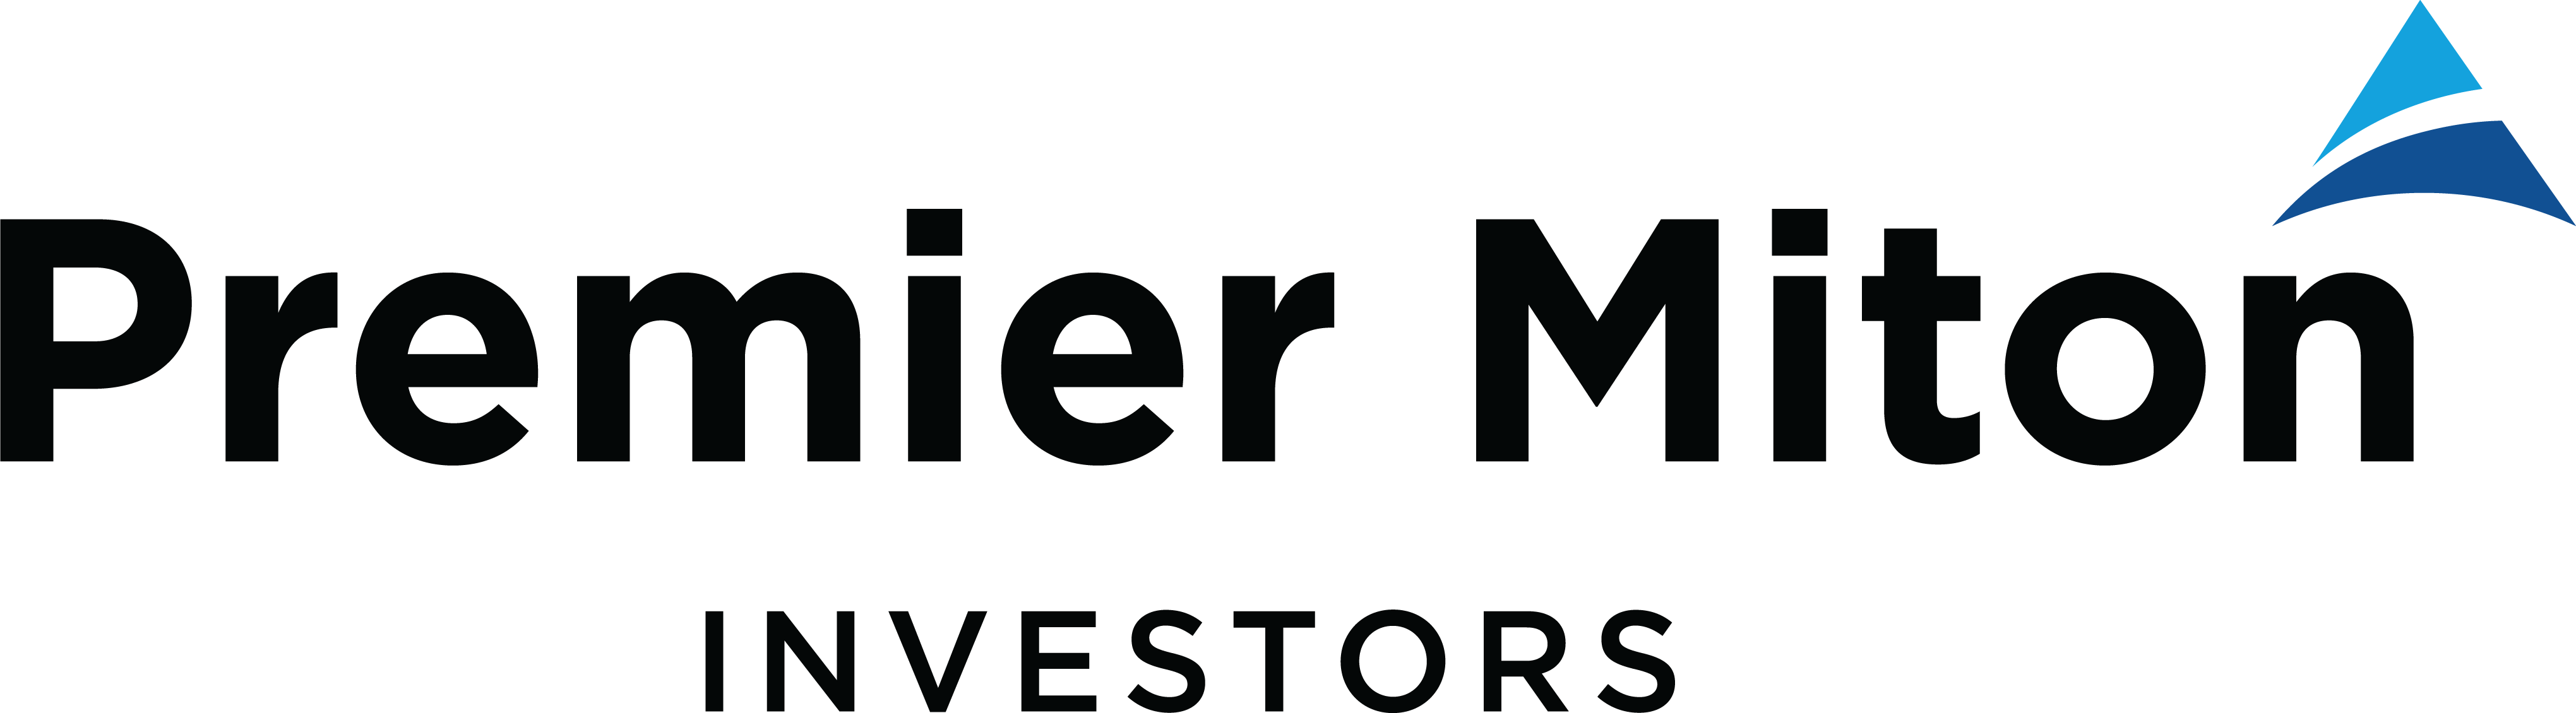 Premier Miton Investors